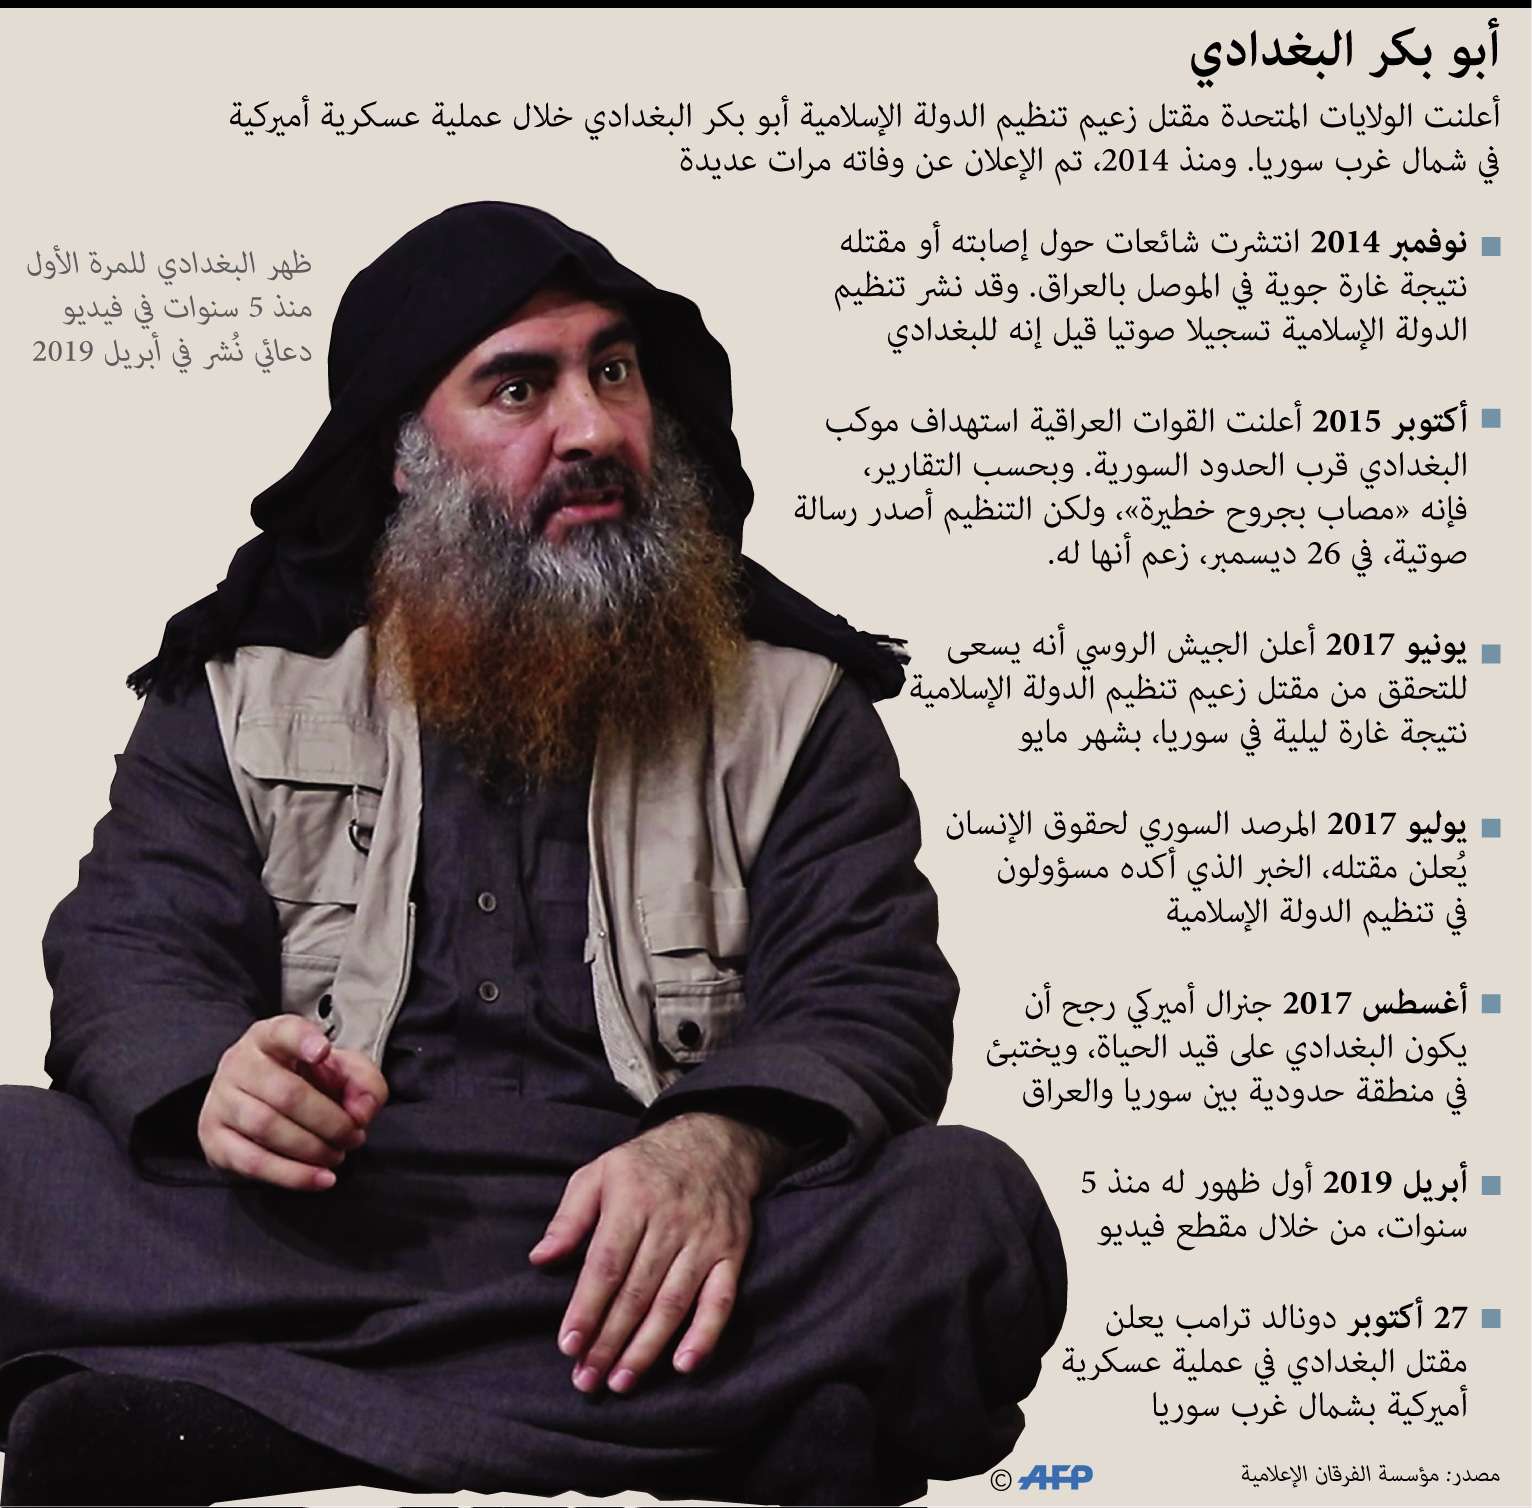 مسيرة أبوبكر البغدادي زعيم داعش